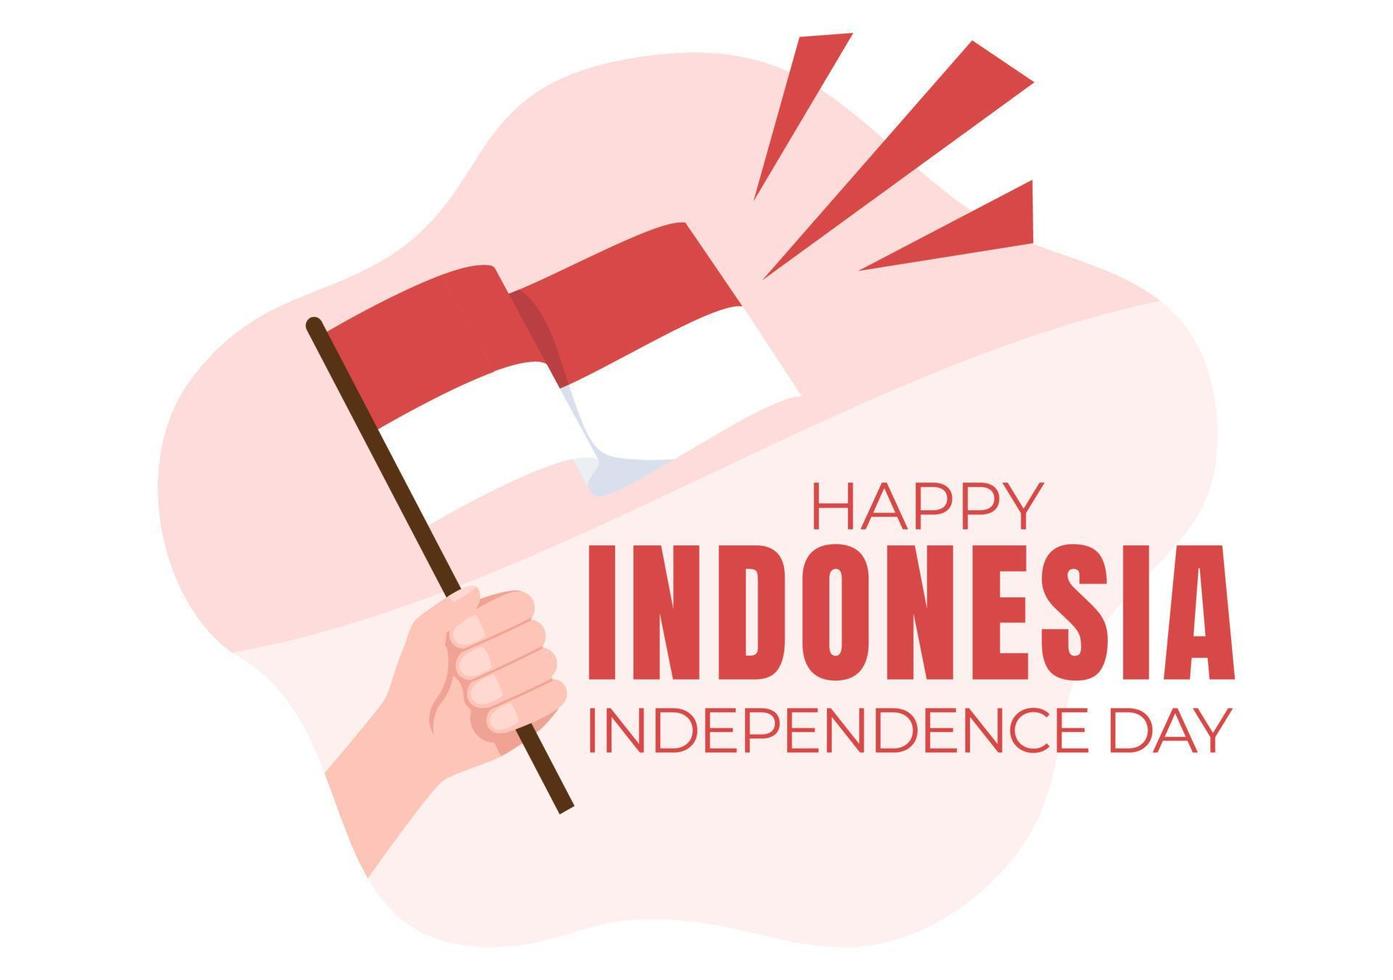 indonesischer unabhängigkeitstag am 17. august mit traditionellen spielen, flagge rot weiß und menschencharakter in flacher niedlicher karikaturhintergrundillustration vektor